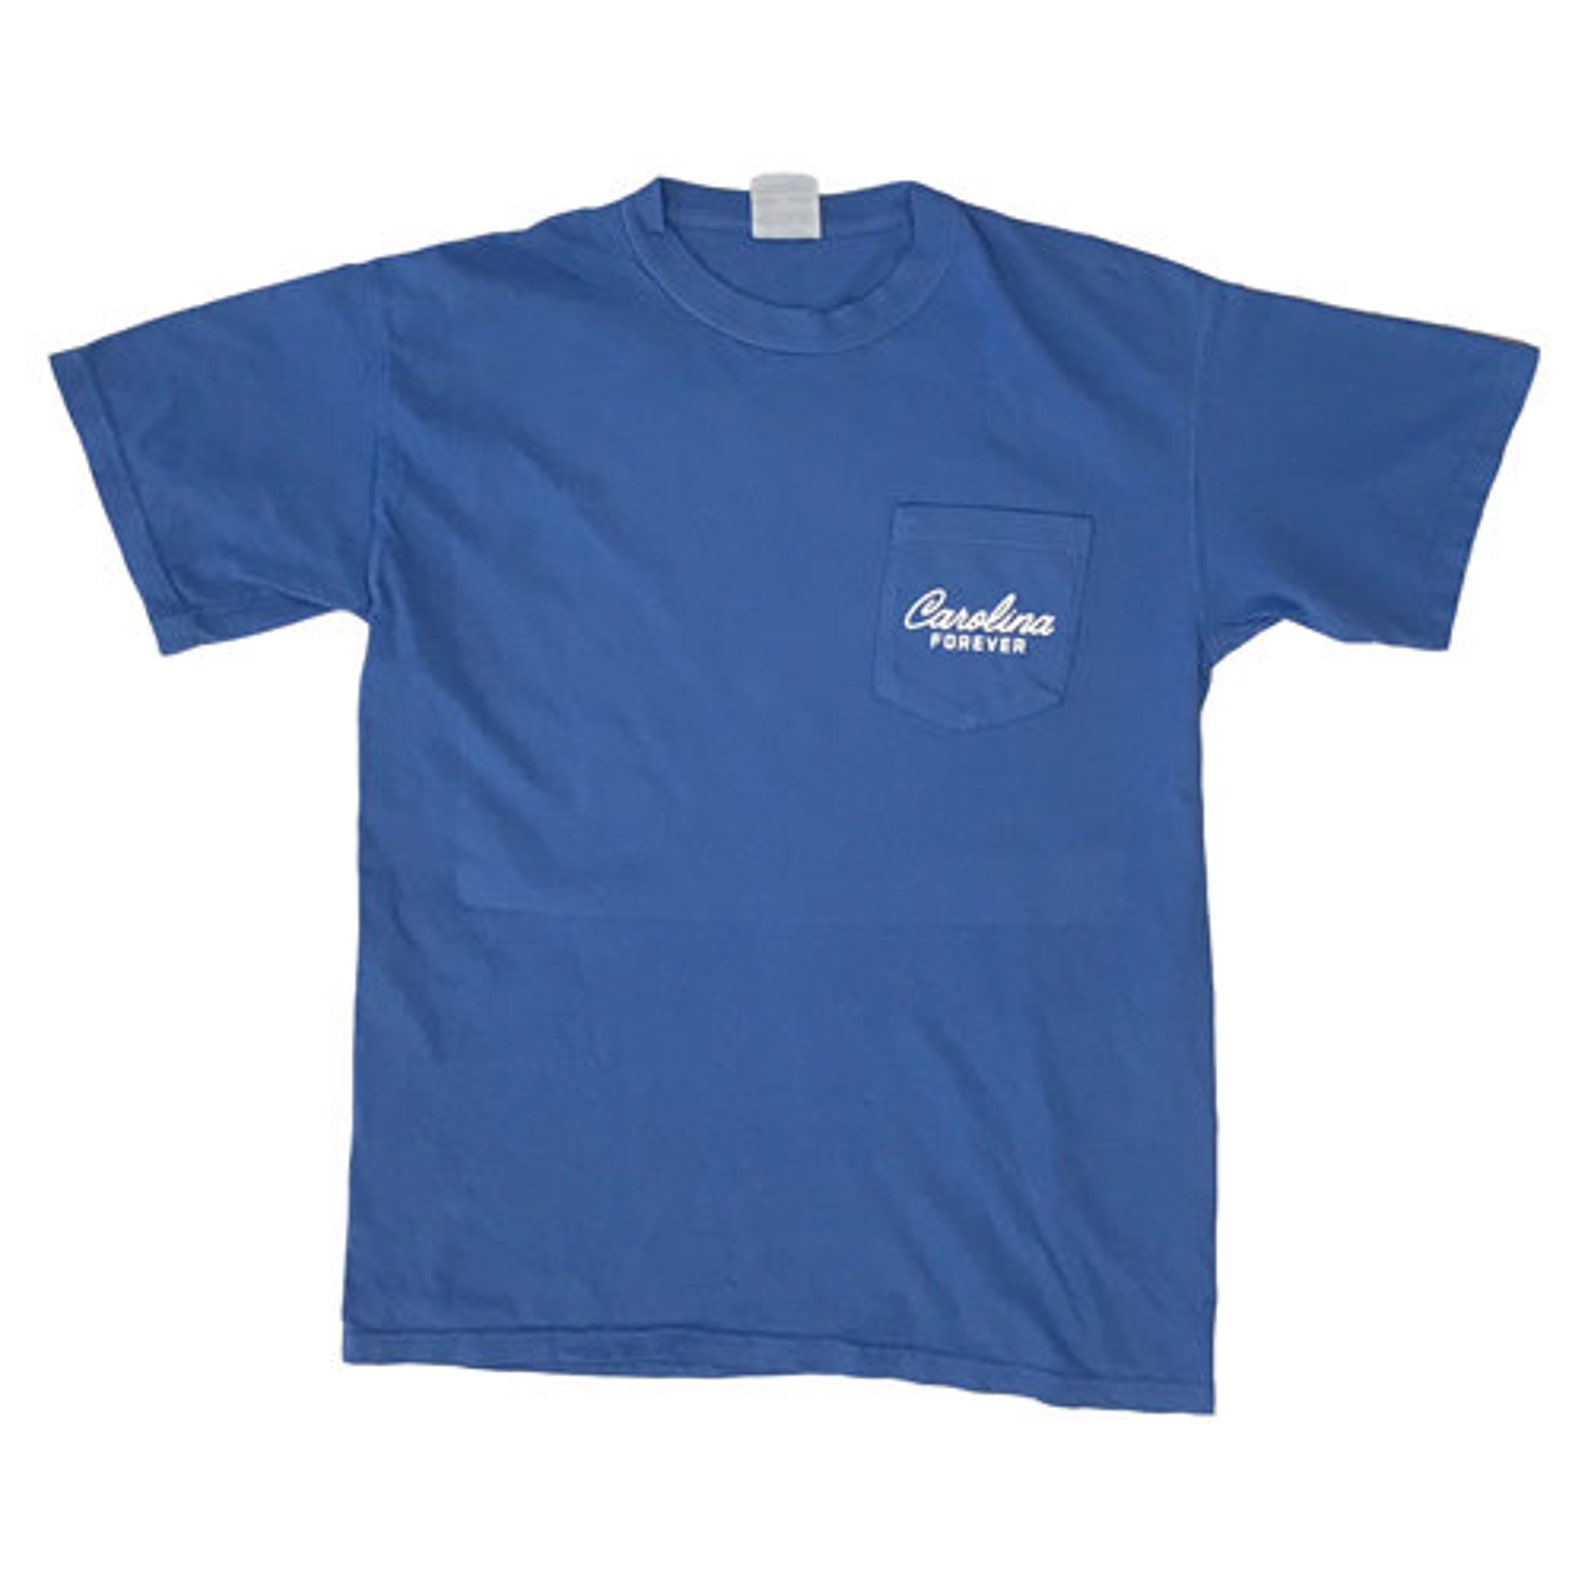 Charleston Pocket T-shirt by Carolina Forever | Etsy